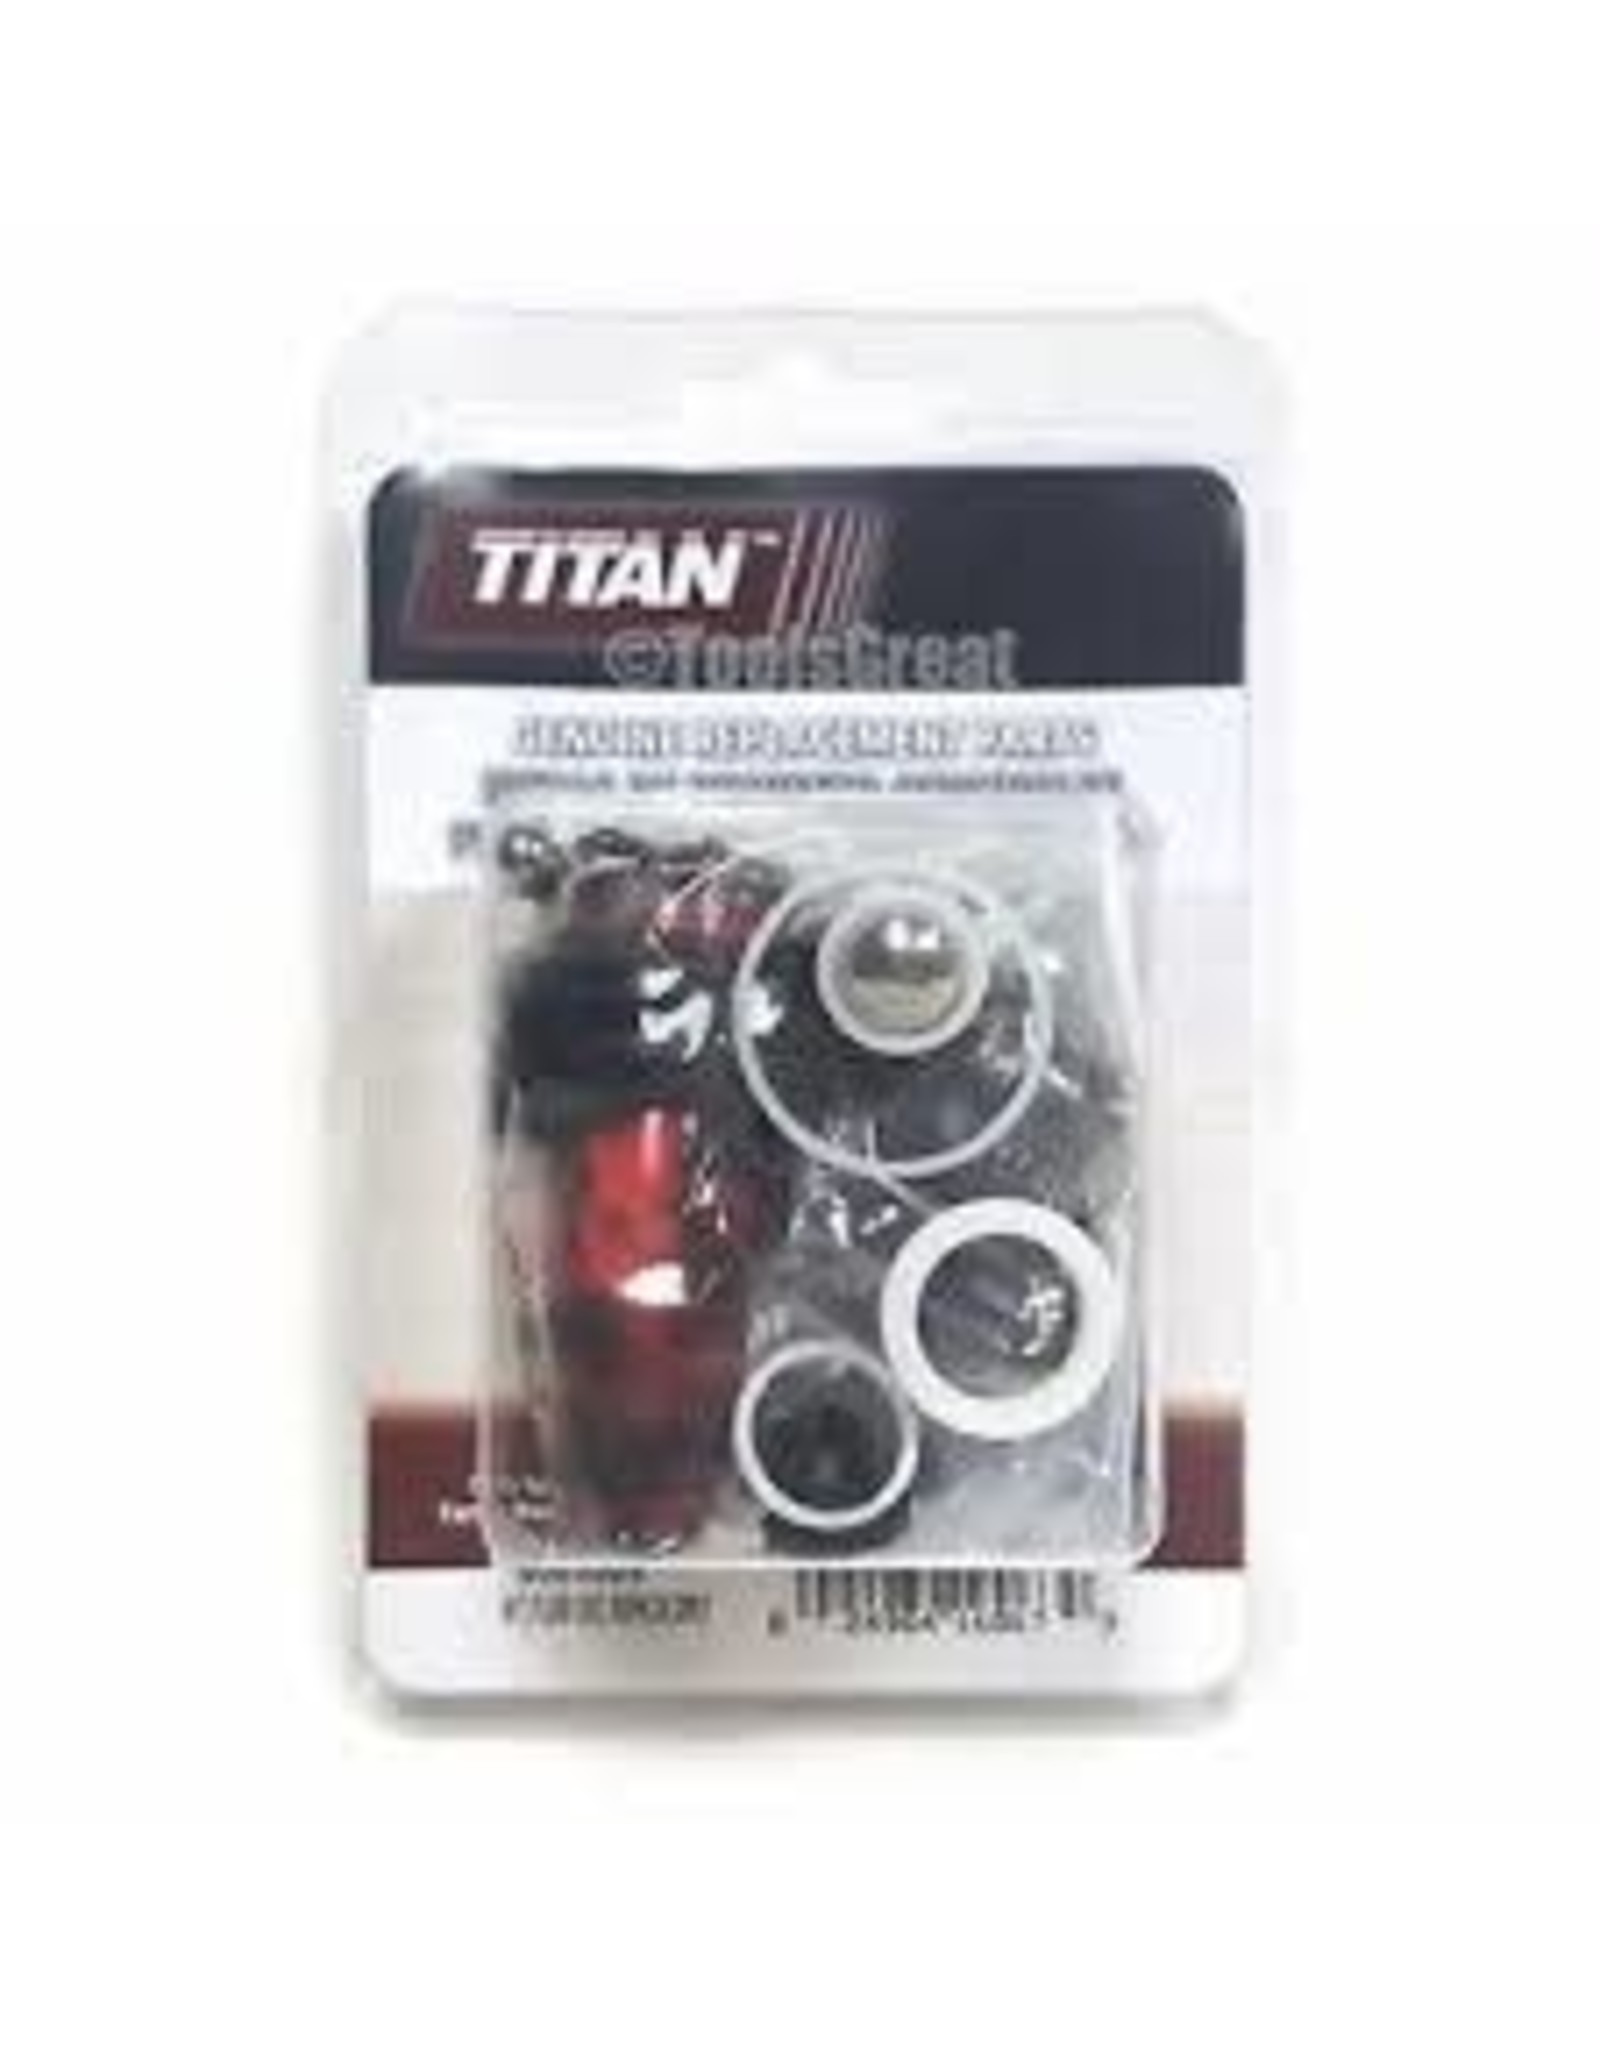 Titan 0509909 OEM Titan Pack Kit, GPX 750